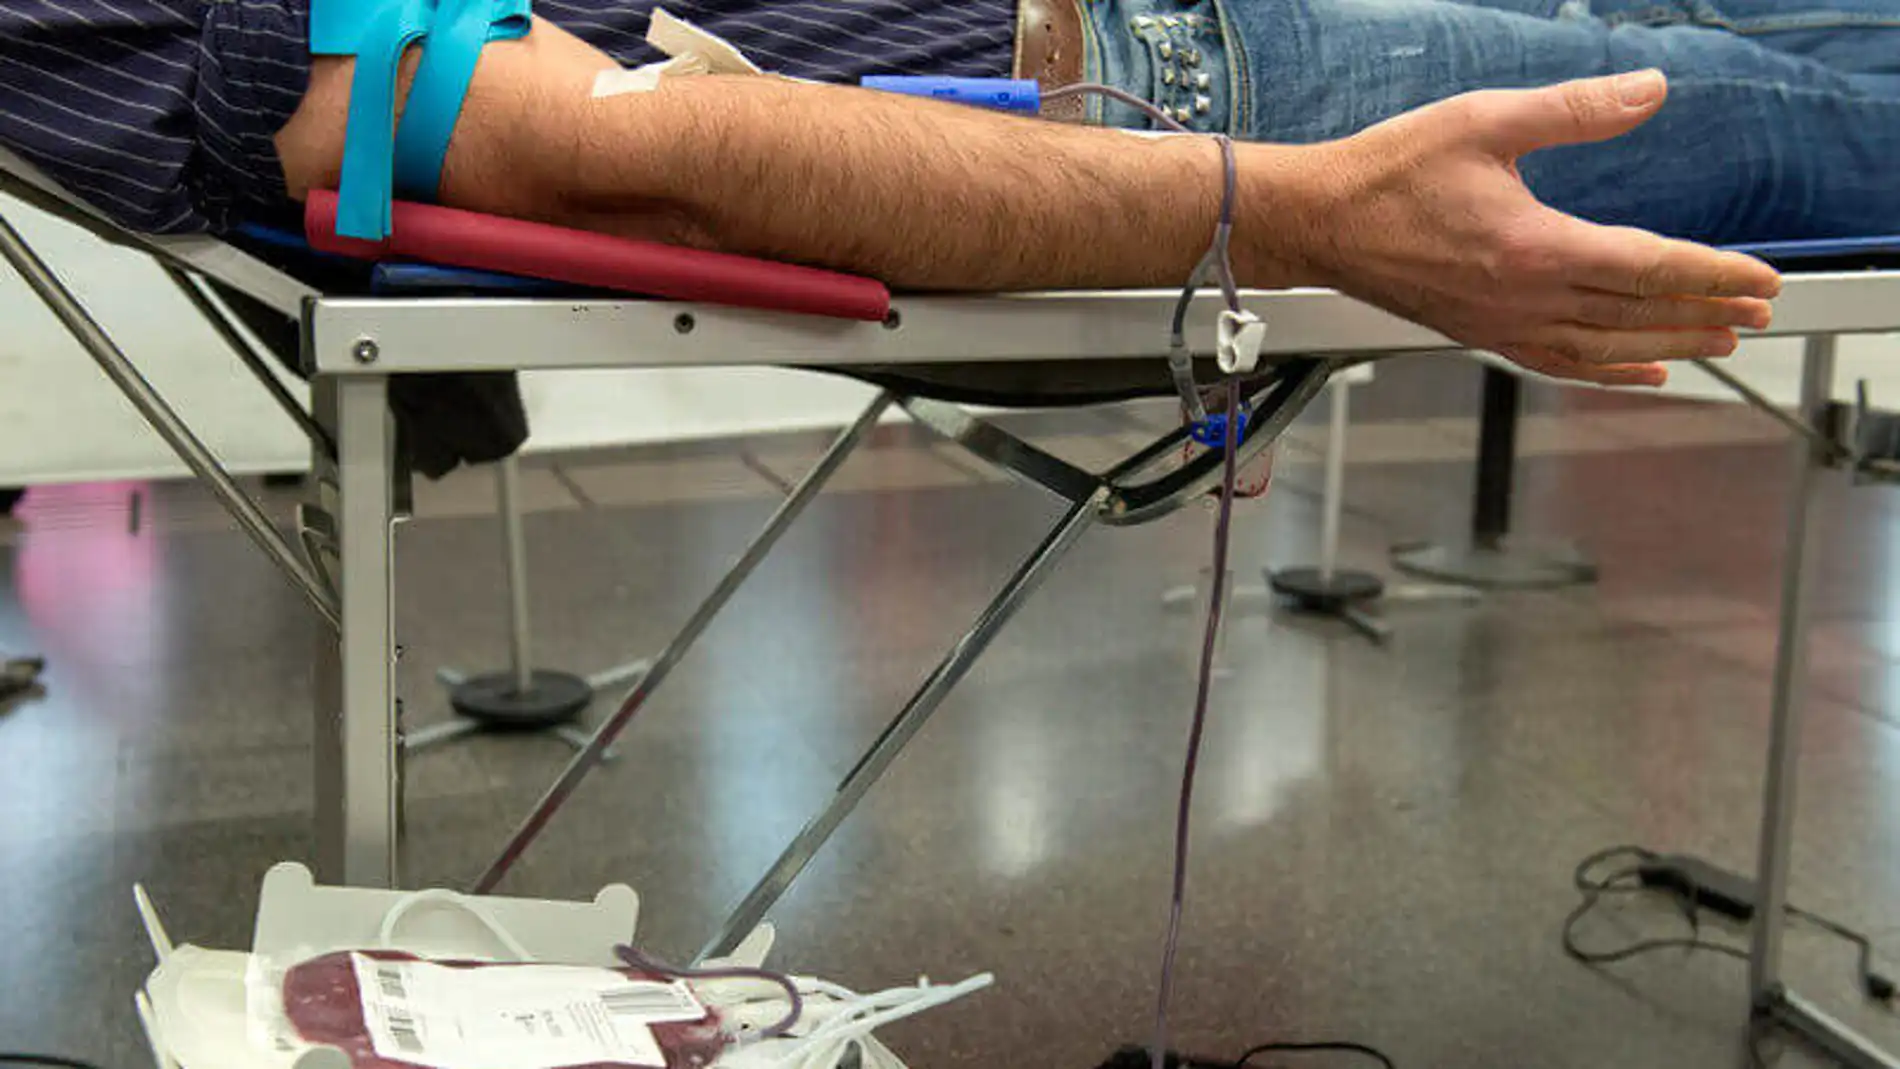 Una persona donando sangre